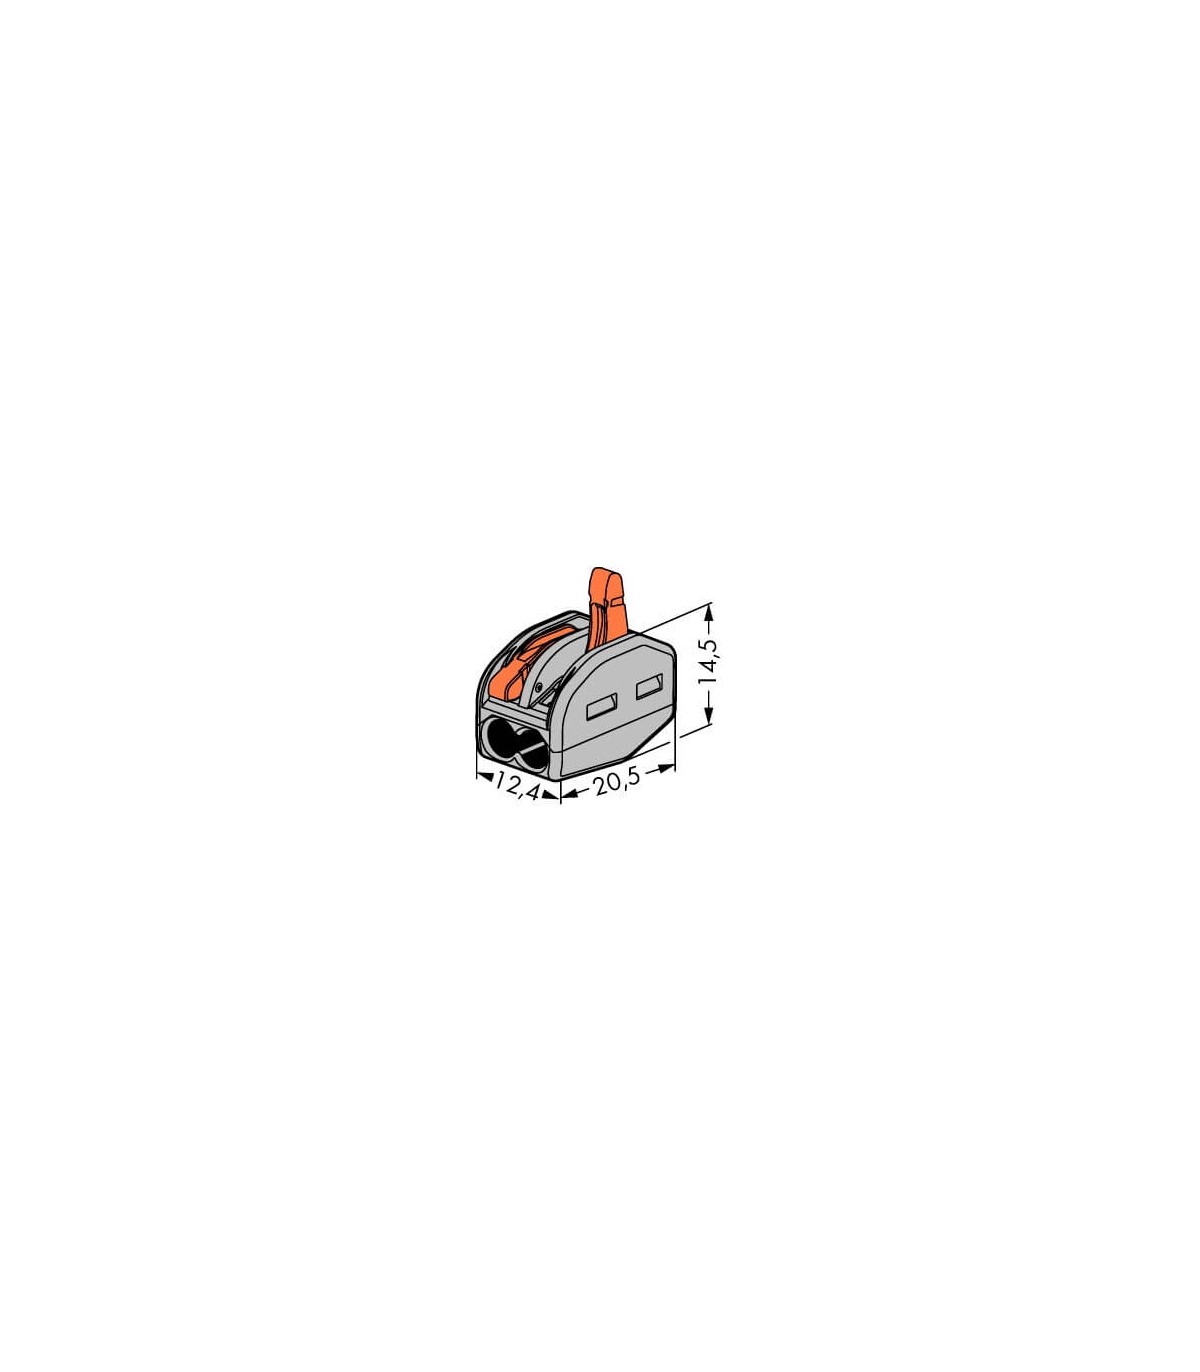 Borne WAGO pour fil souple ou rigide ultracompacte de 0,08 à 4mm²